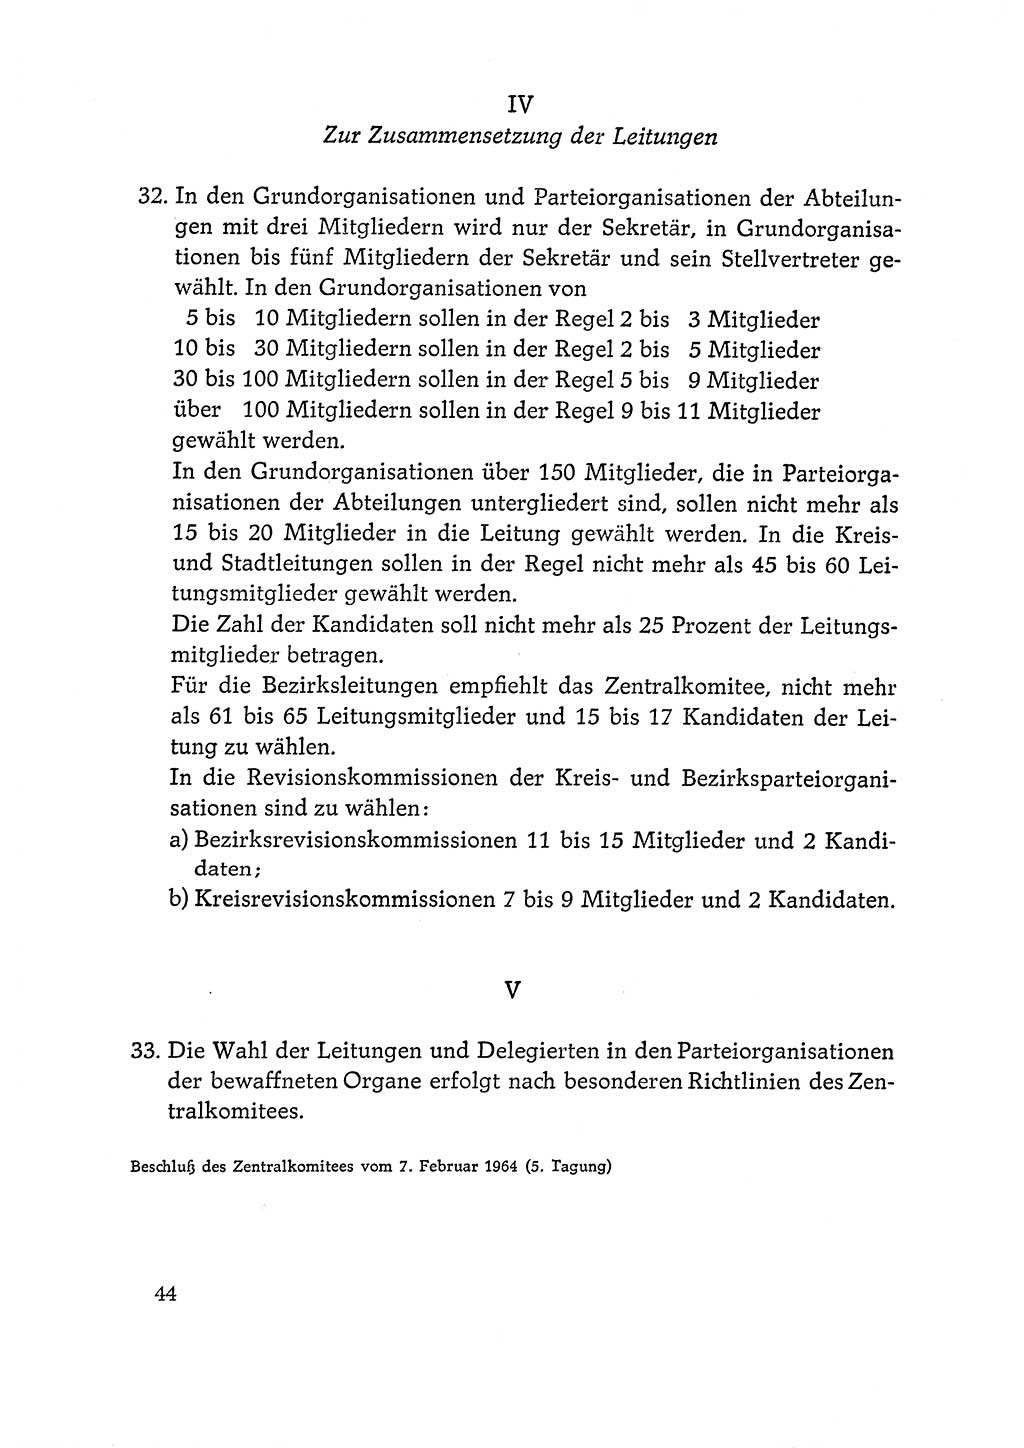 Dokumente der Sozialistischen Einheitspartei Deutschlands (SED) [Deutsche Demokratische Republik (DDR)] 1964-1965, Seite 44 (Dok. SED DDR 1964-1965, S. 44)